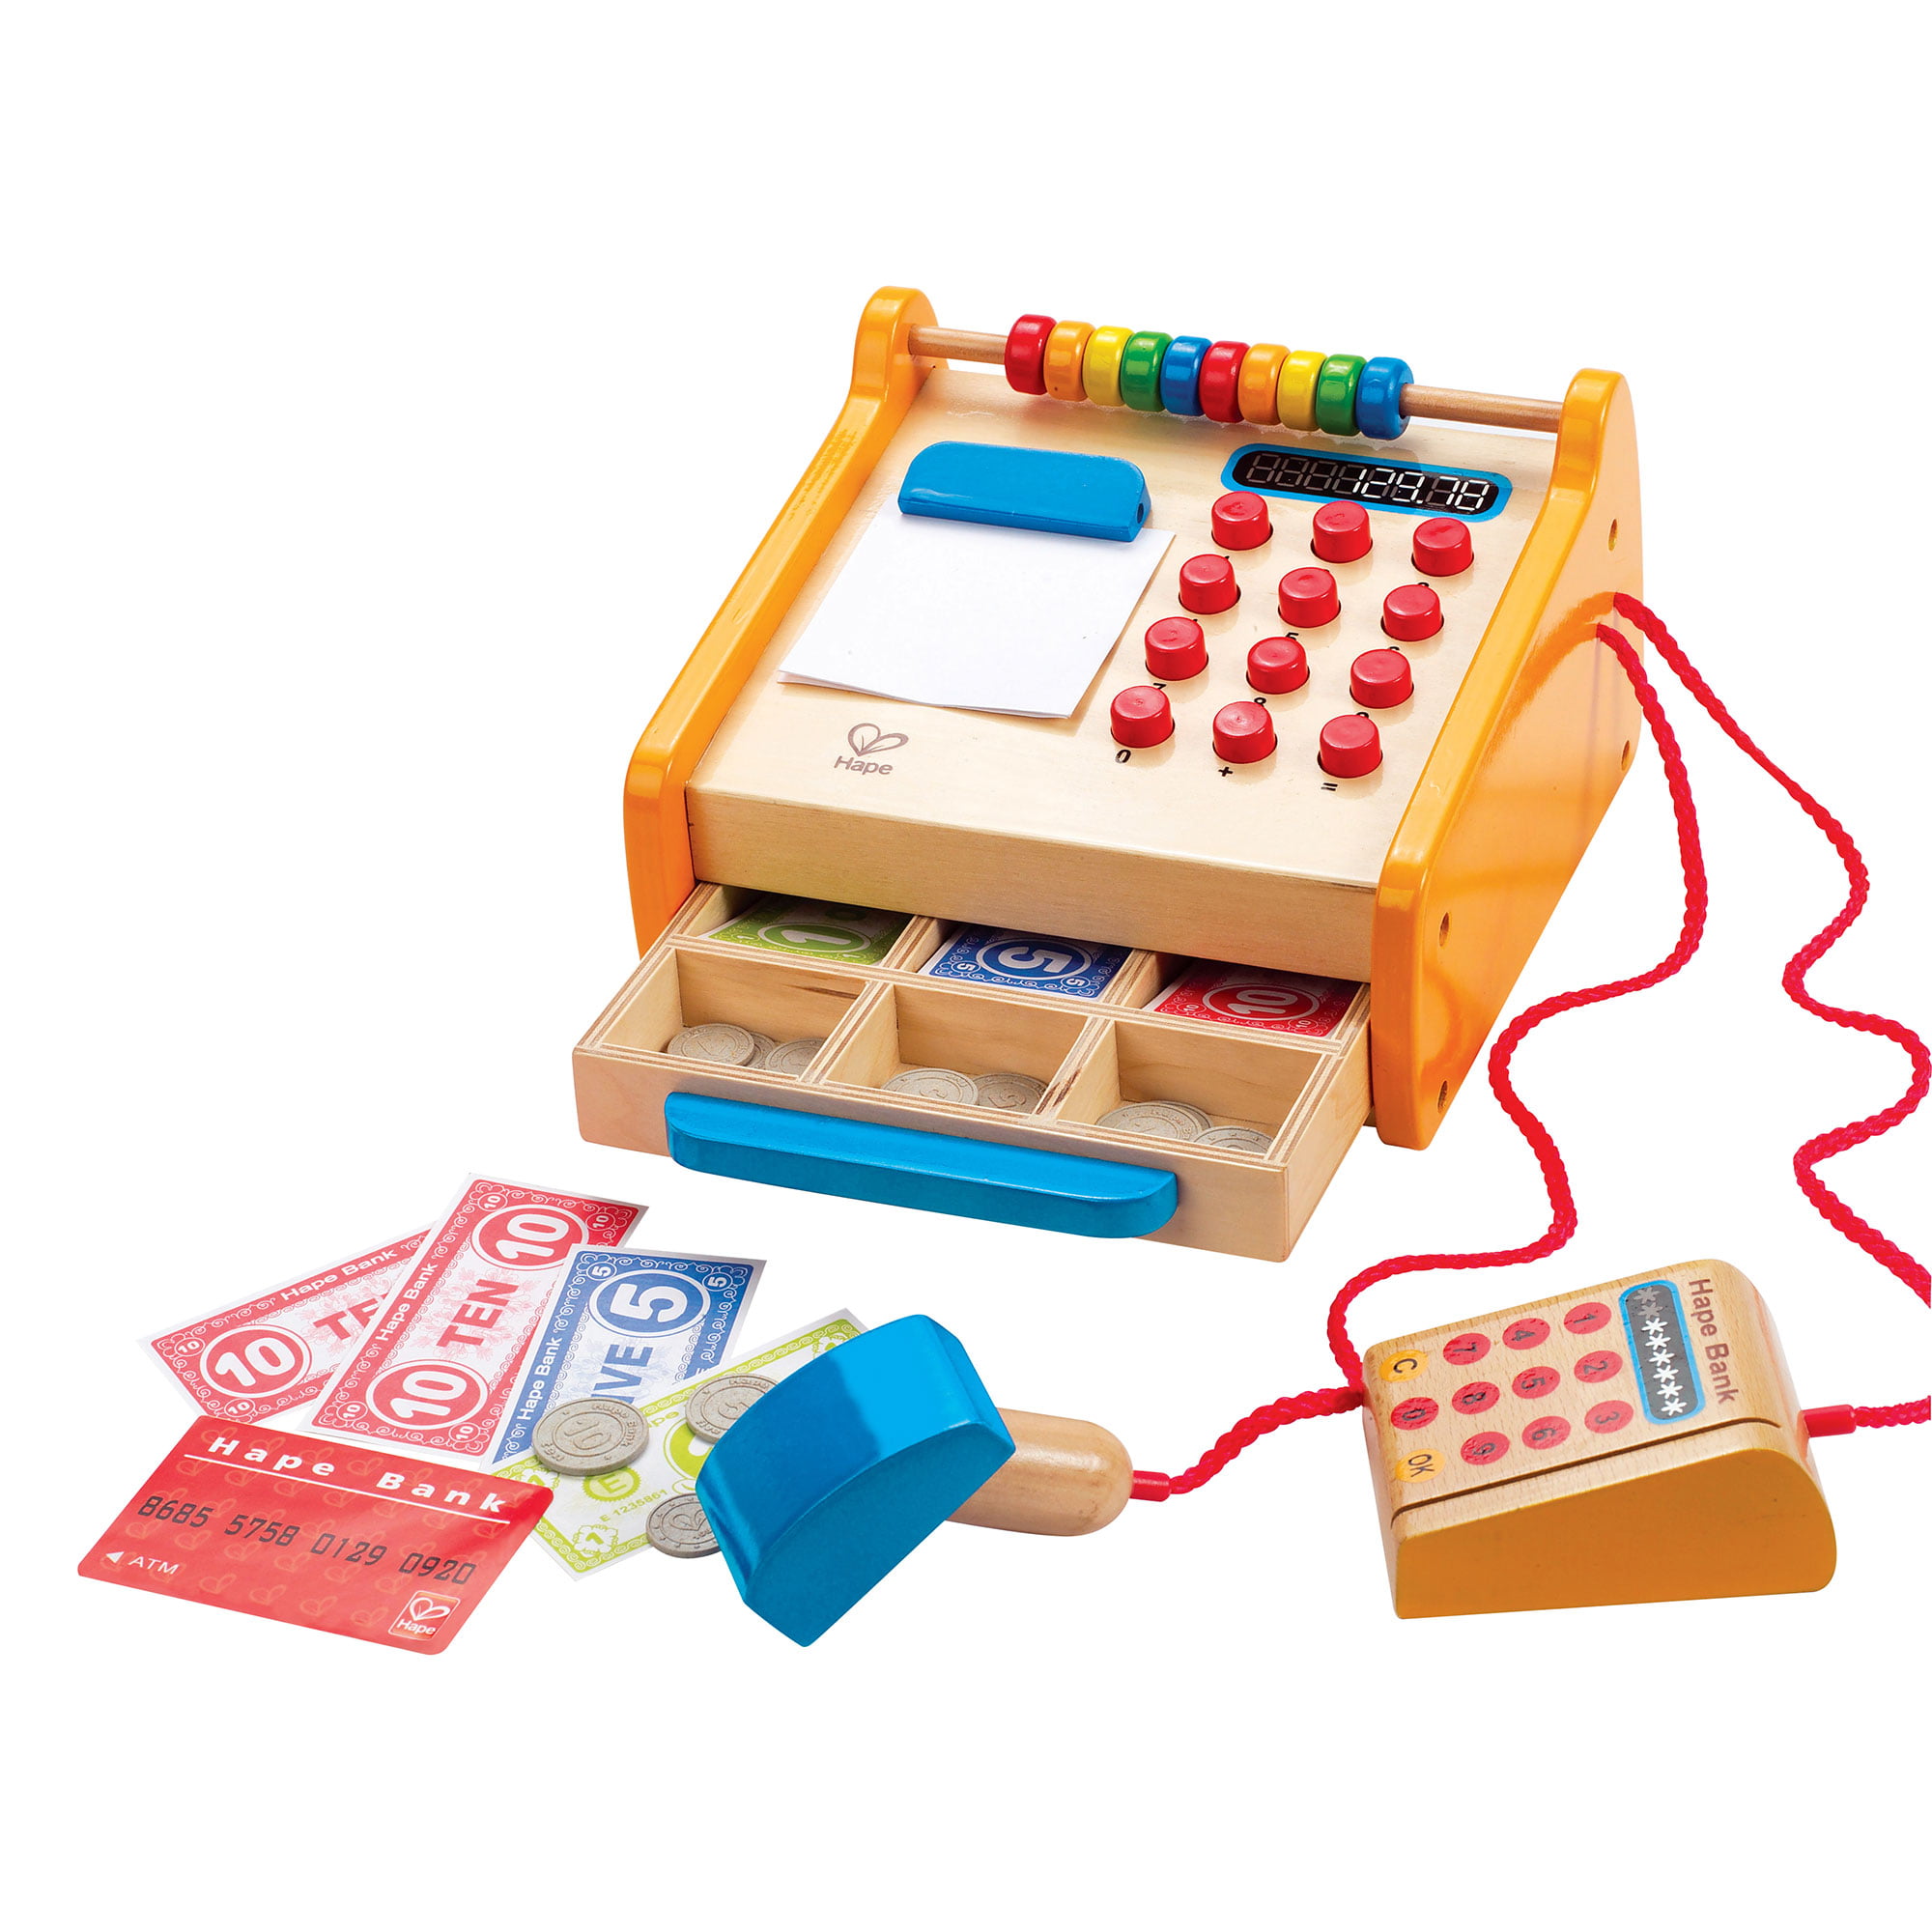 Hape Checkout Cash Register Shop Role Play Children Toy Counter Wooden E3121 